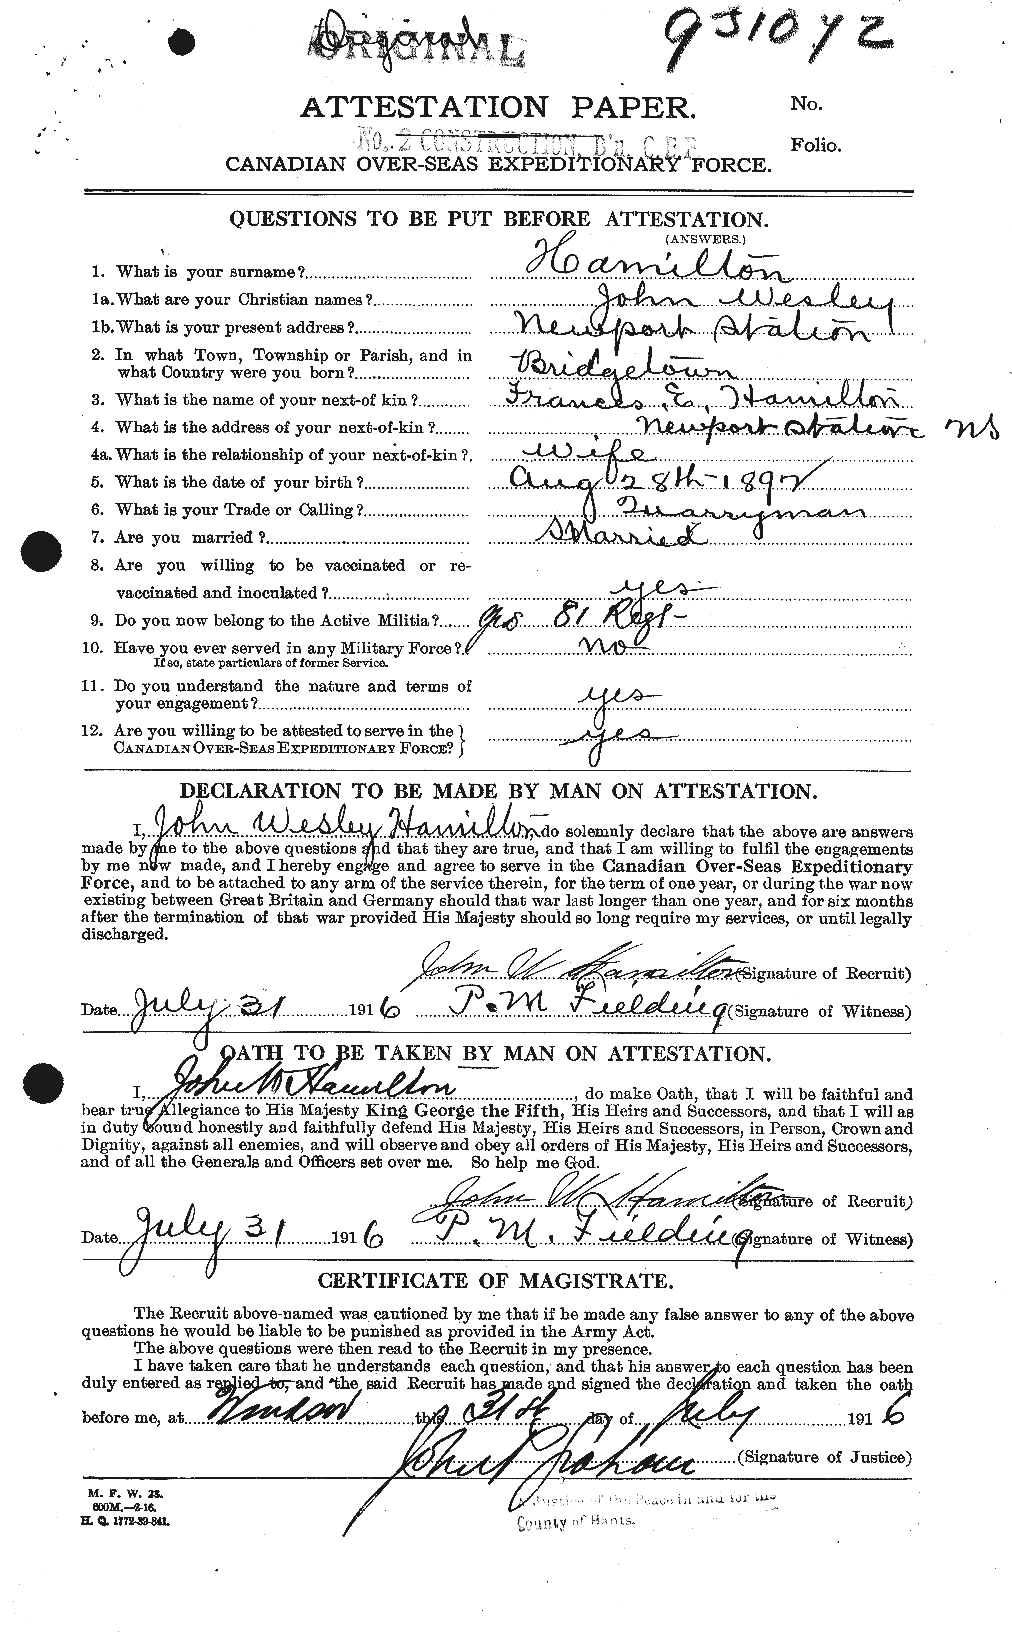 Dossiers du Personnel de la Première Guerre mondiale - CEC 373129a